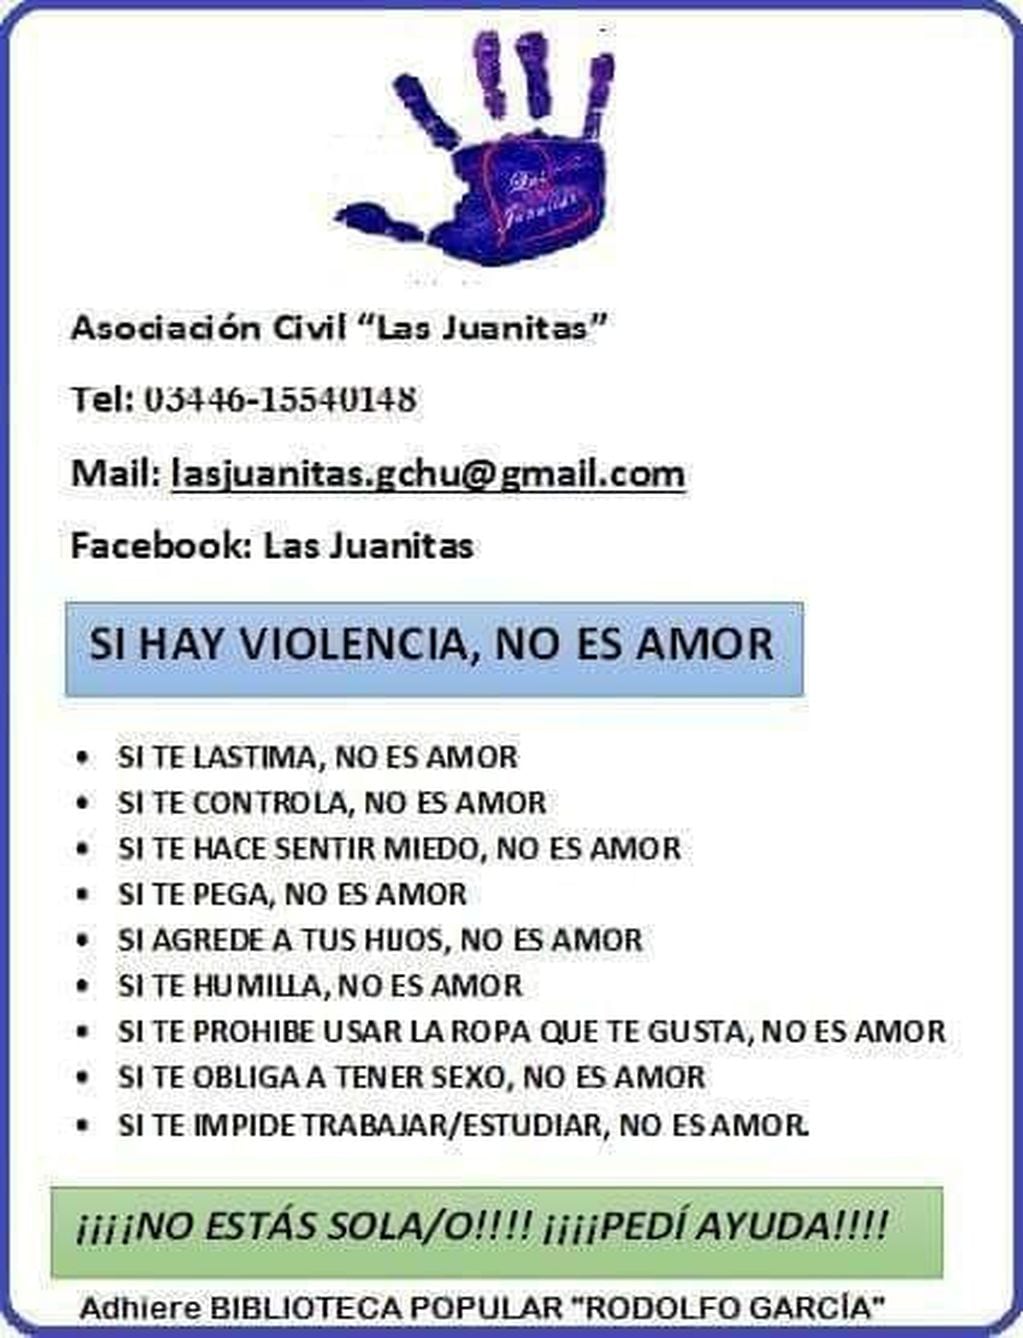 Las Juanitas ONG - Violencia de Género
Crédito: Vía Gualeguaychú